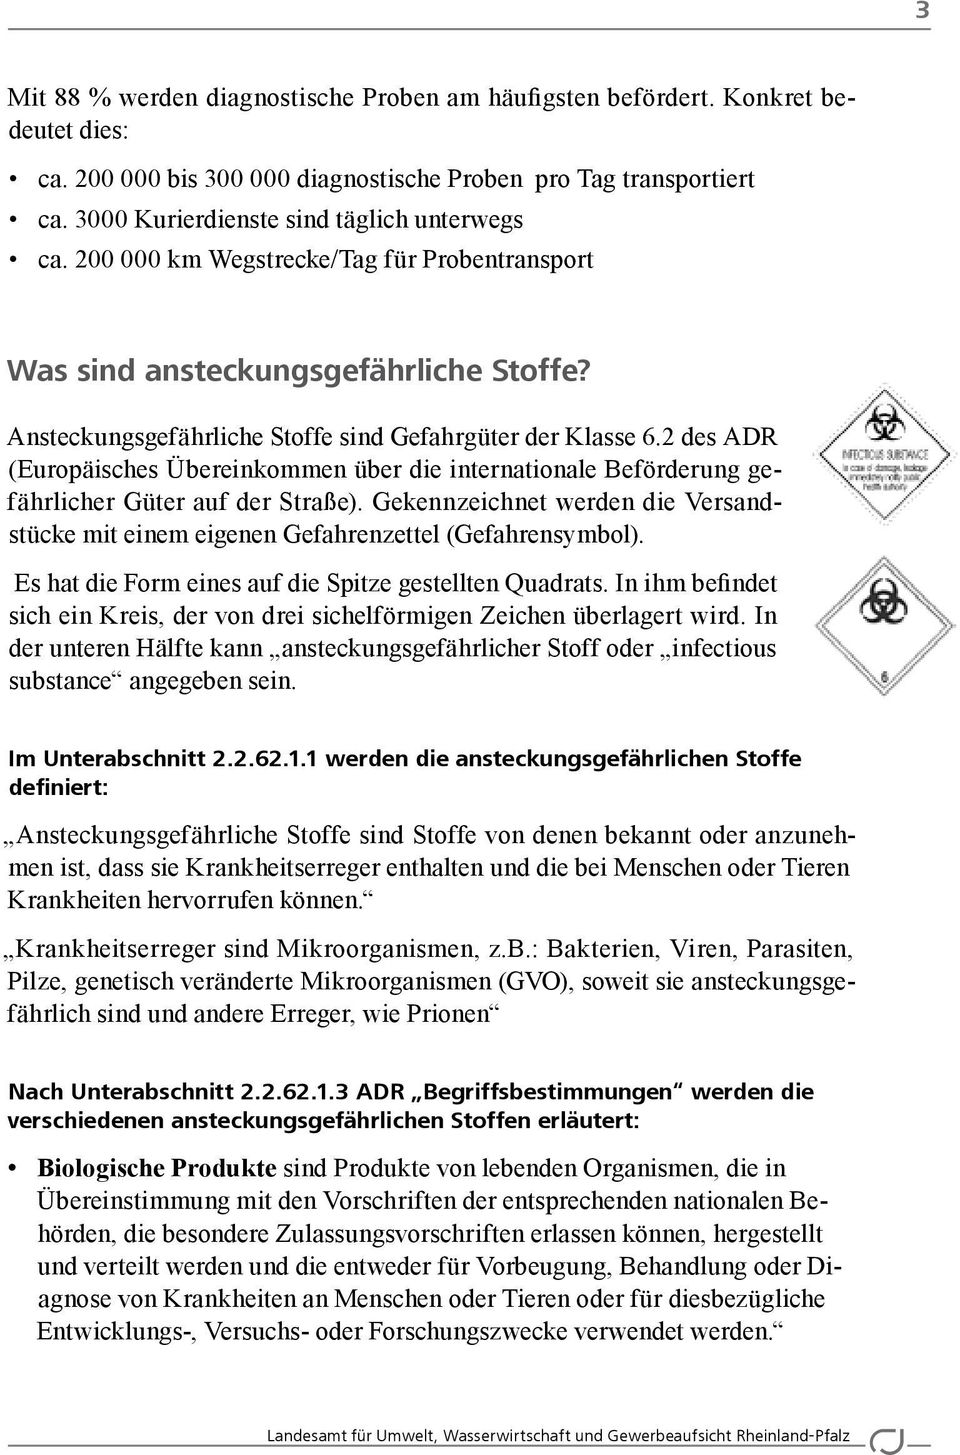 2 des ADR (Europäisches Übereinkommen über die internationale Beförderung gefährlicher Güter auf der Straße). Gekennzeichnet werden die Versandstücke mit einem eigenen Gefahrenzettel (Gefahrensymbol).